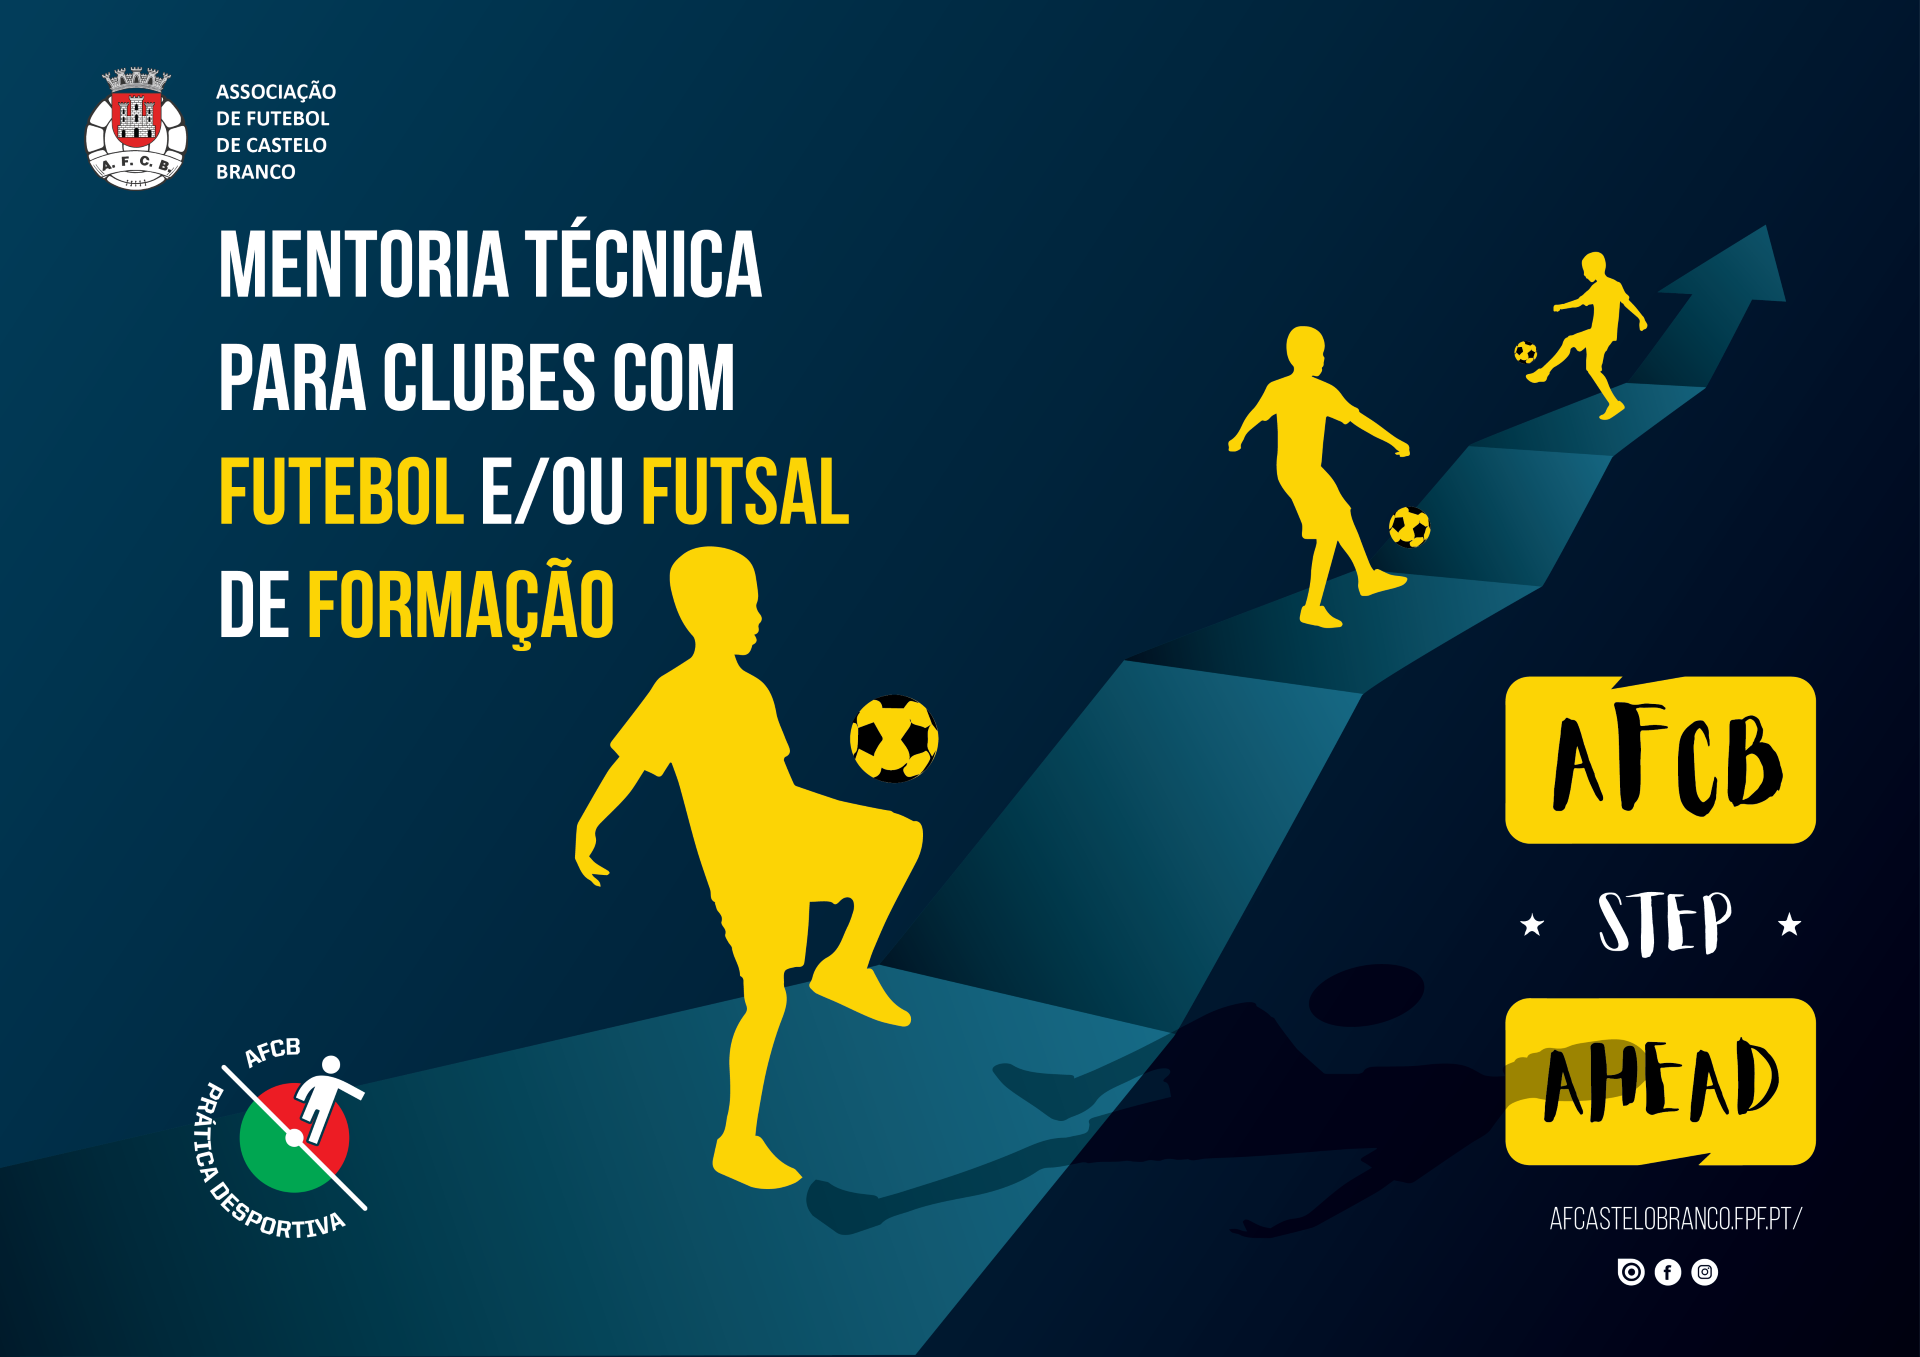 AFCB cria projeto de Mentoria Técnica para Clubes Futebol e/ou Futsal de Formação